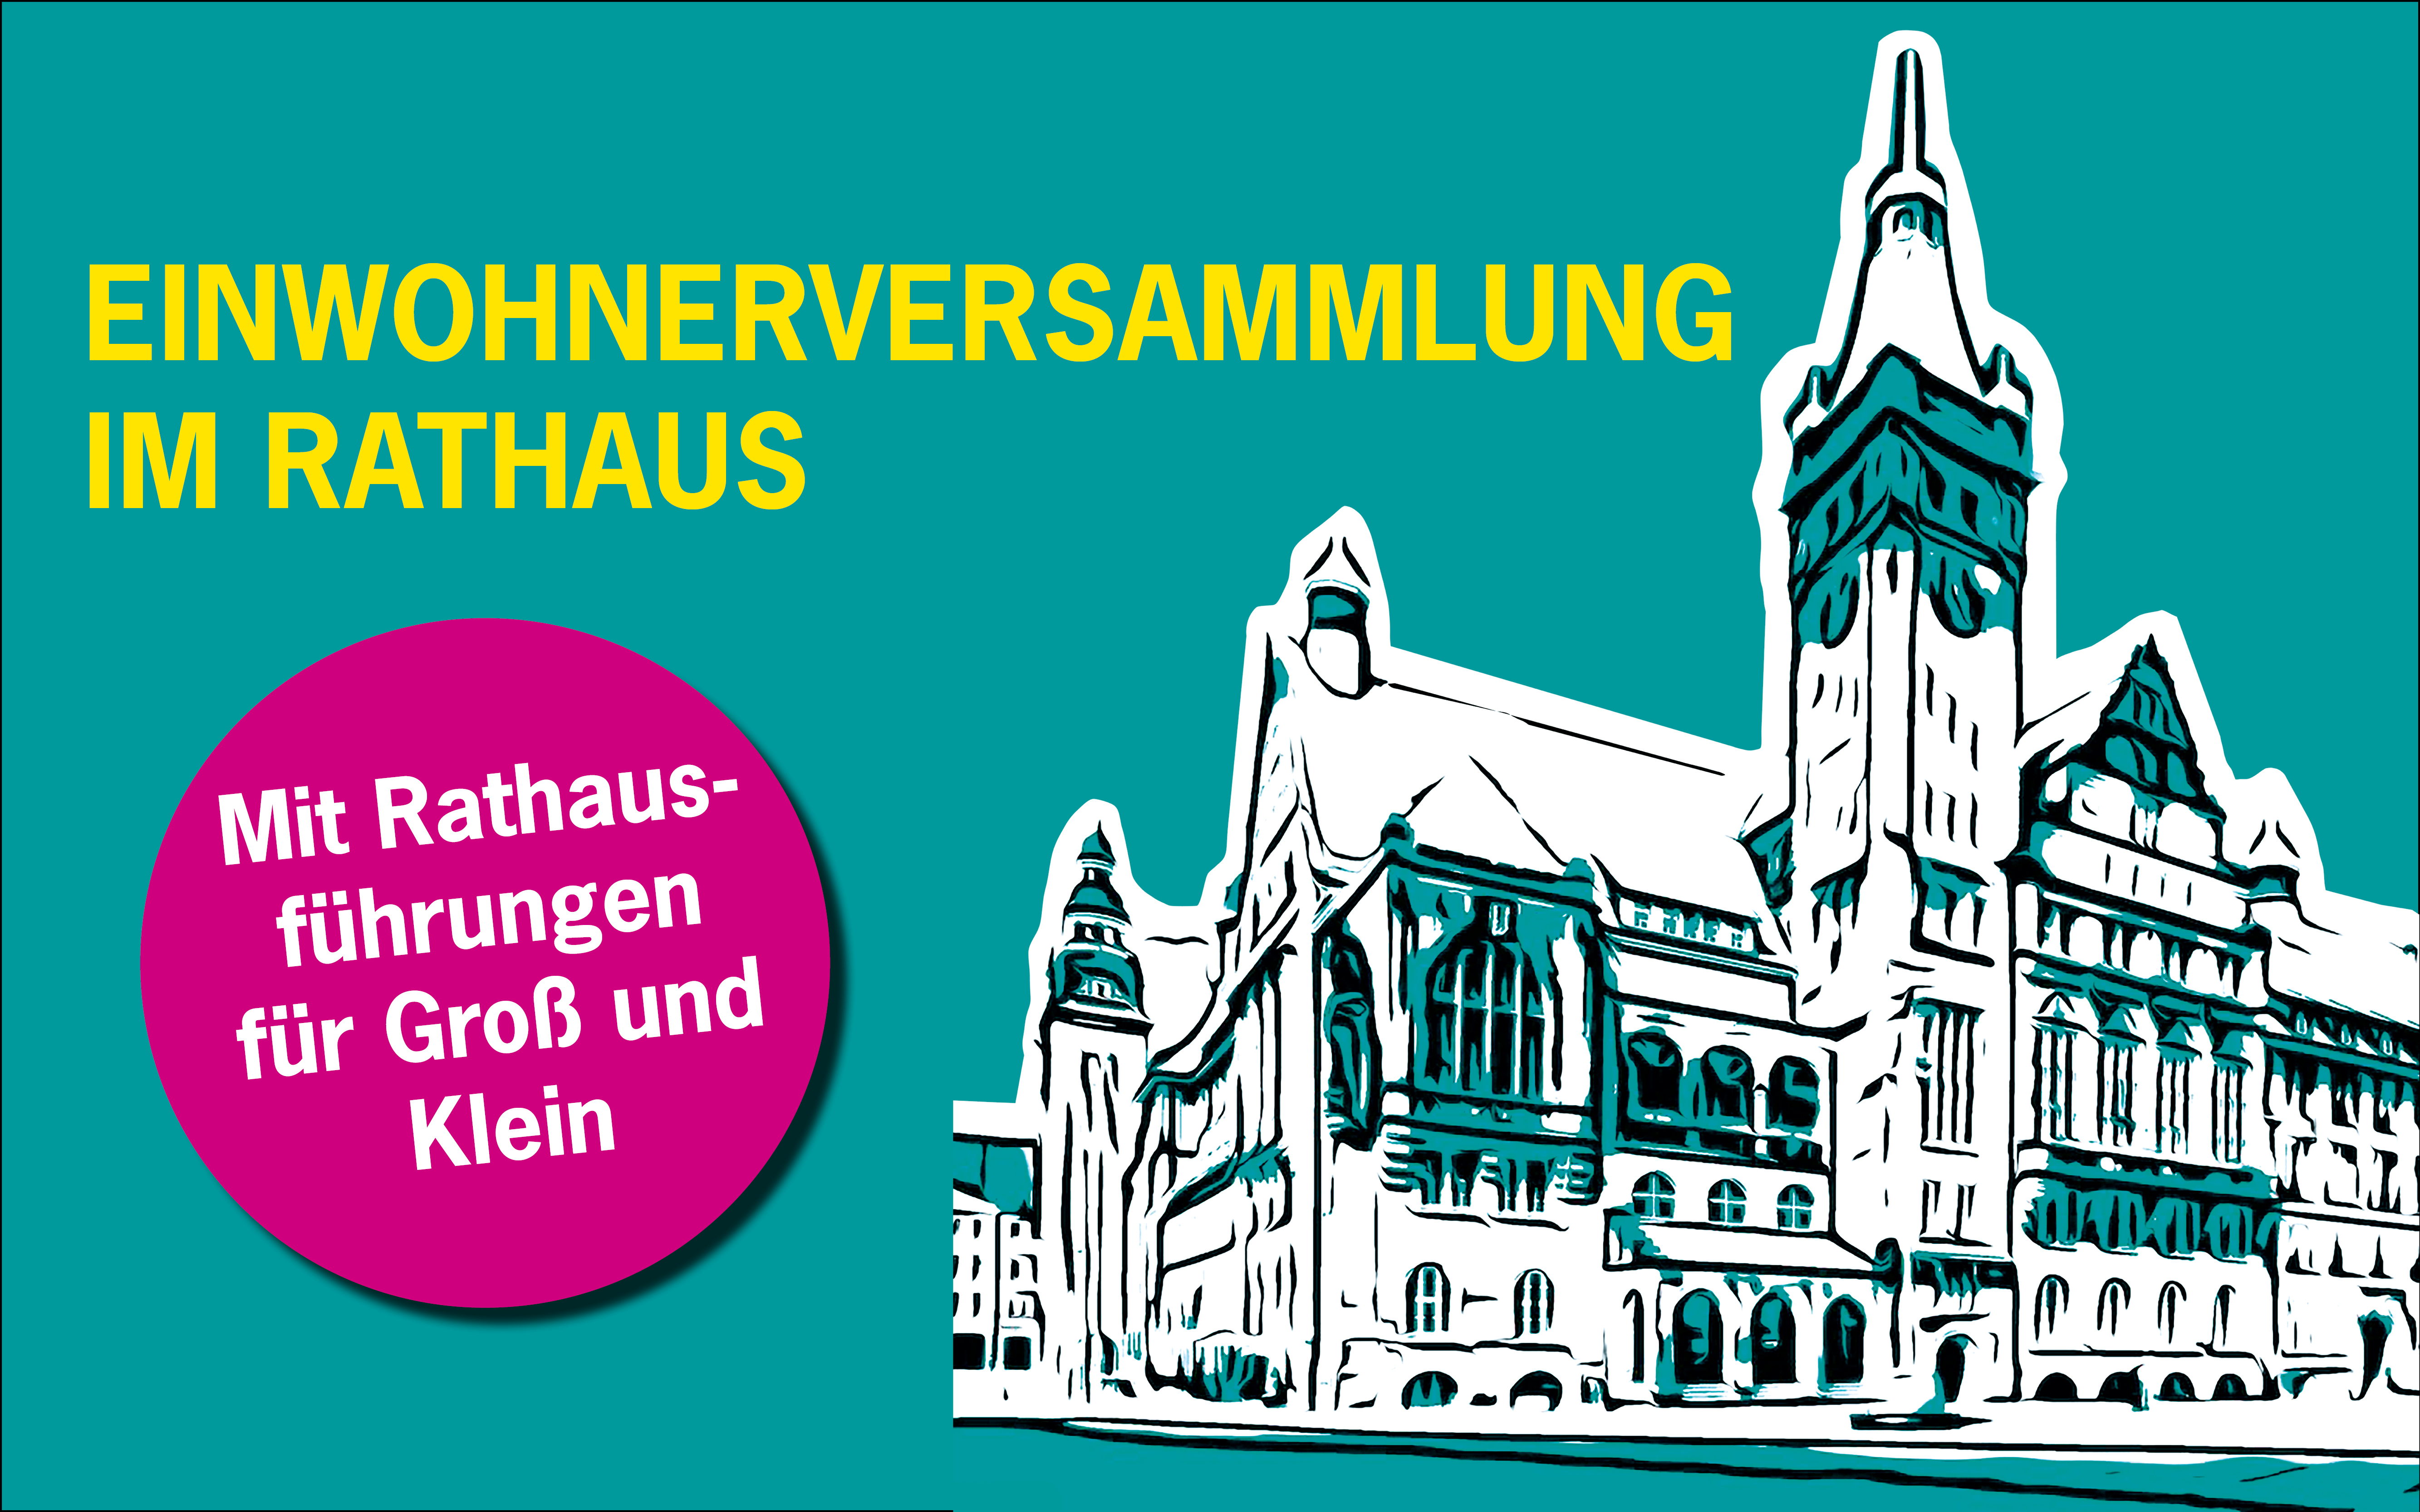 Am 11. Mai fand die erste Einwohnerversammlung für das gesamte Stadtgebiet im Chemnitzer Rathaus statt.